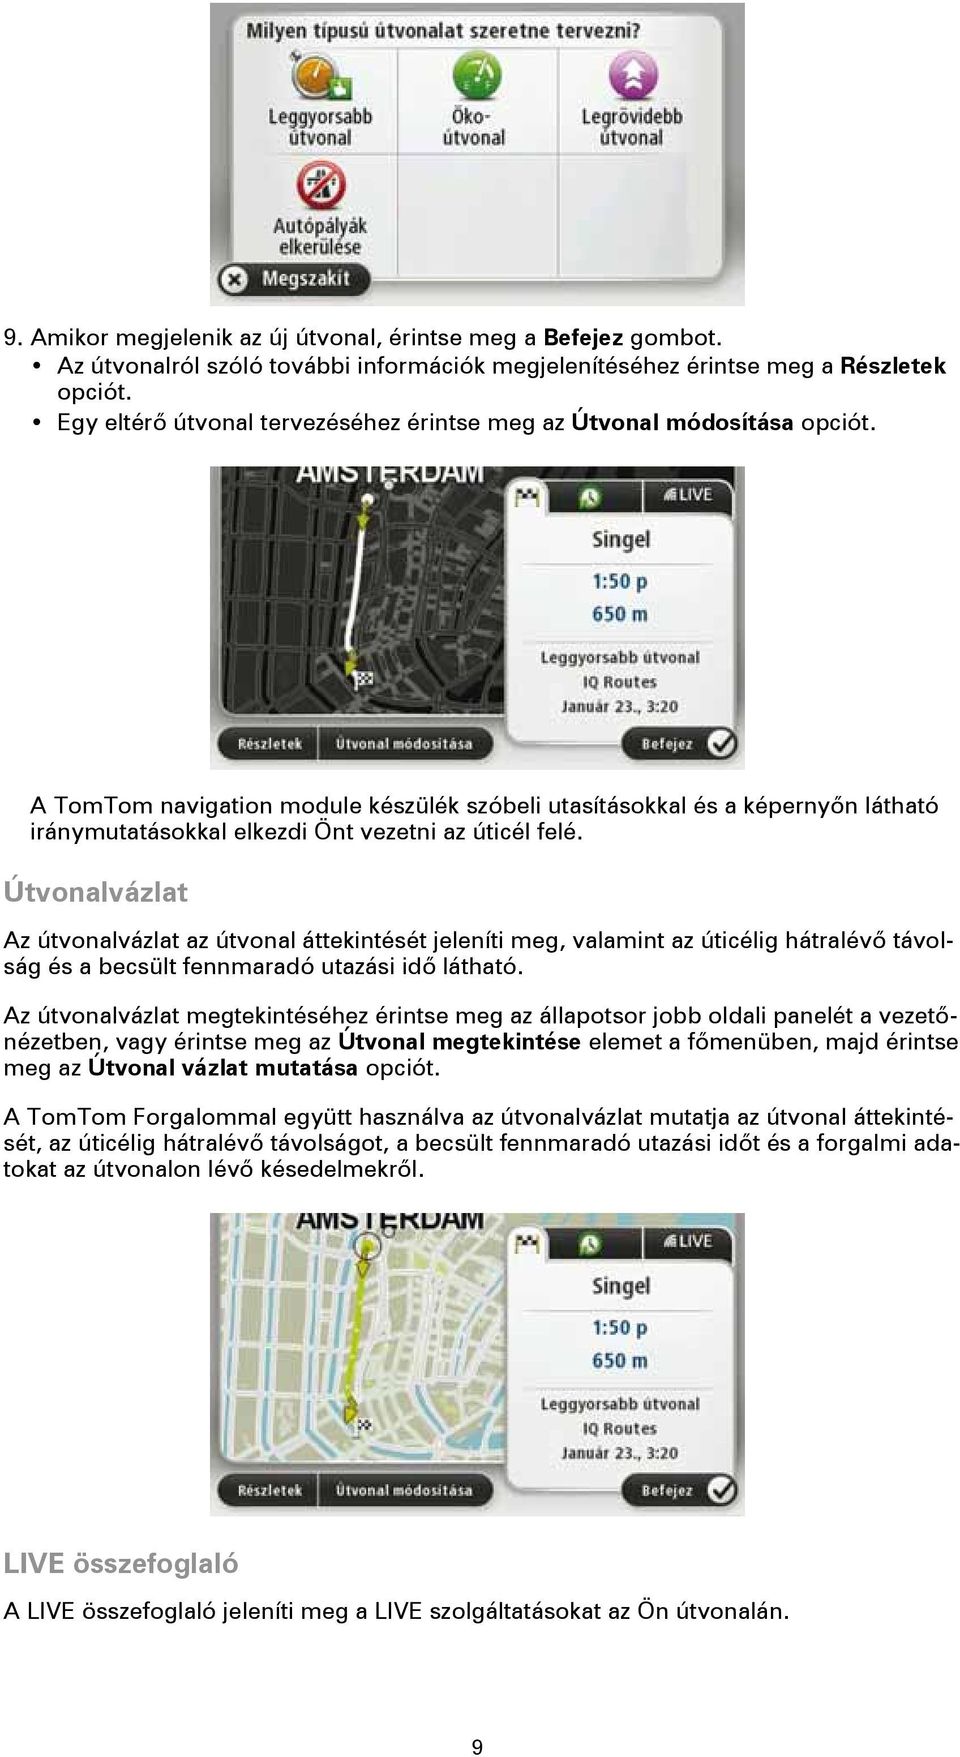 A TomTom navigation module készülék szóbeli utasításokkal és a képernyőn látható iránymutatásokkal elkezdi Önt vezetni az úticél felé.